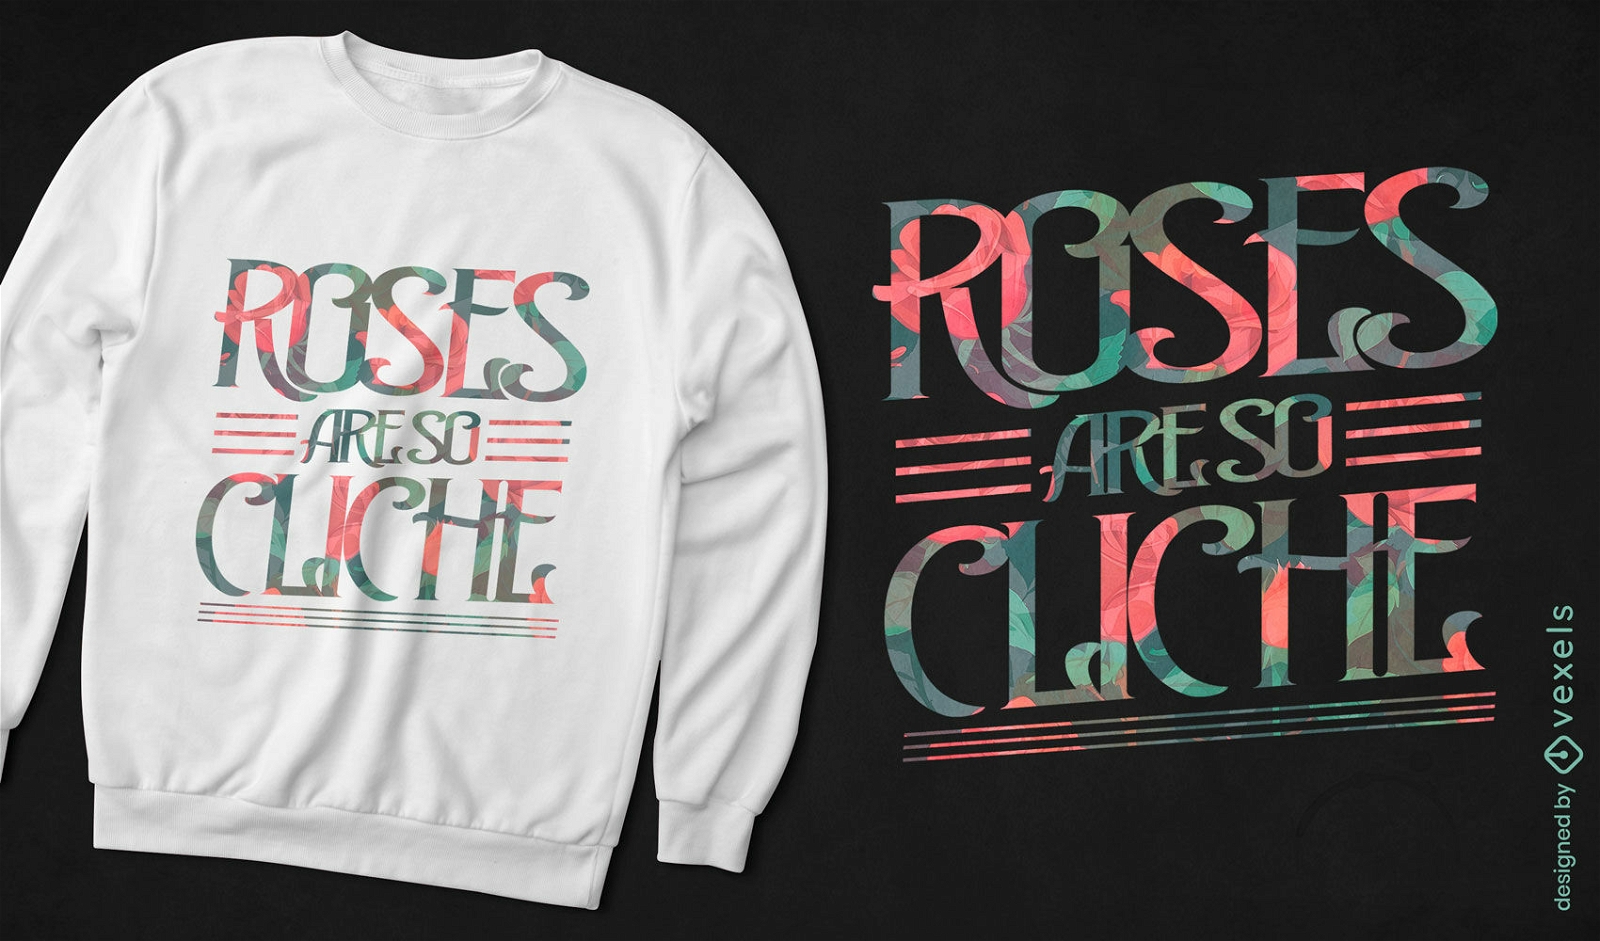 Dise?o de camiseta con cita clich? de rosas.